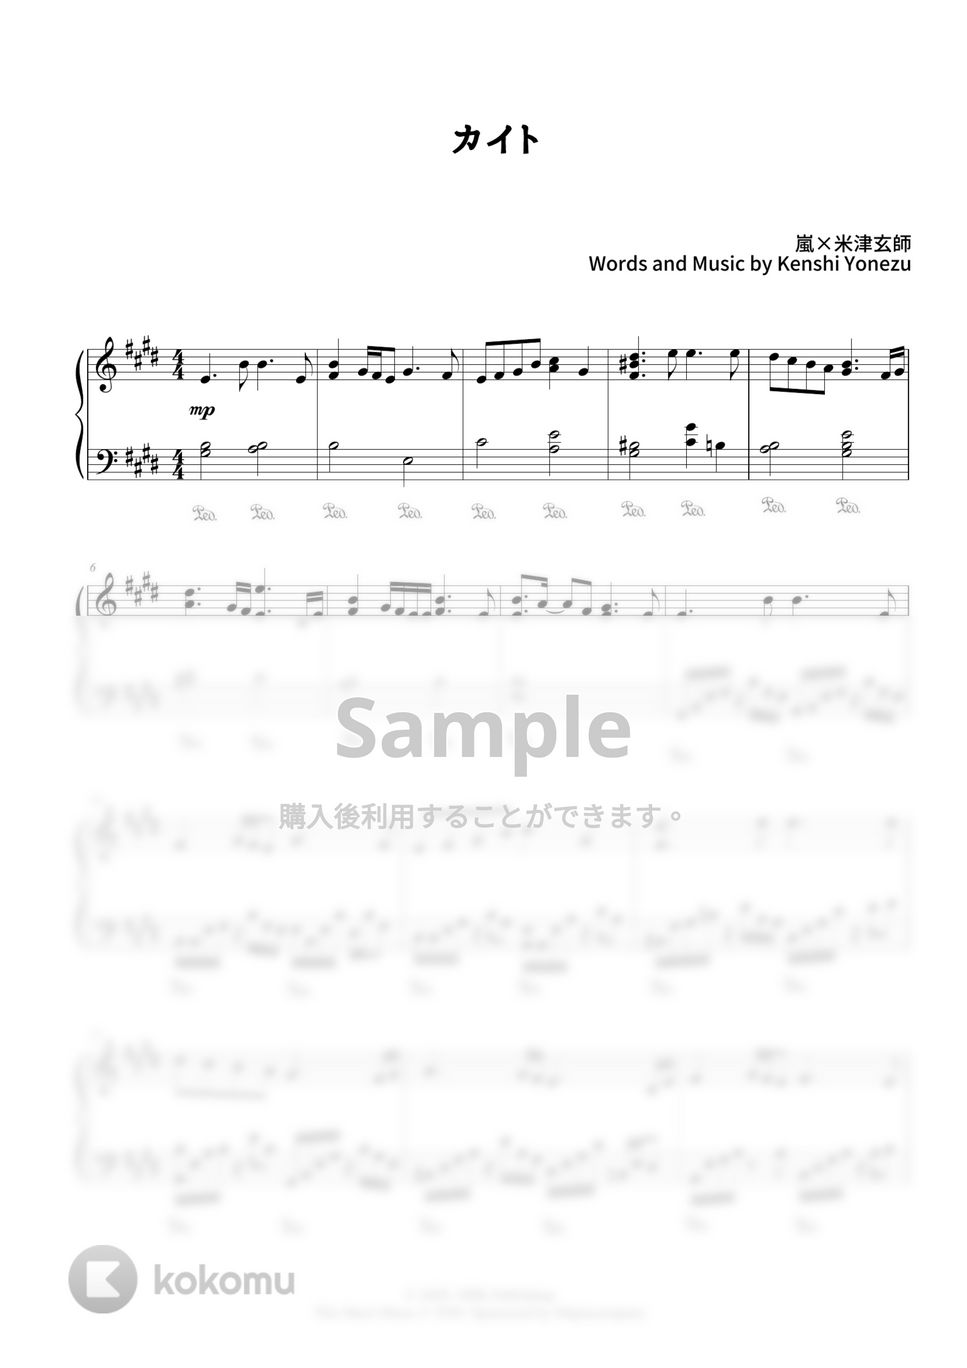 嵐×米津玄師 - カイト (NHK2020ソング) by CANACANA family